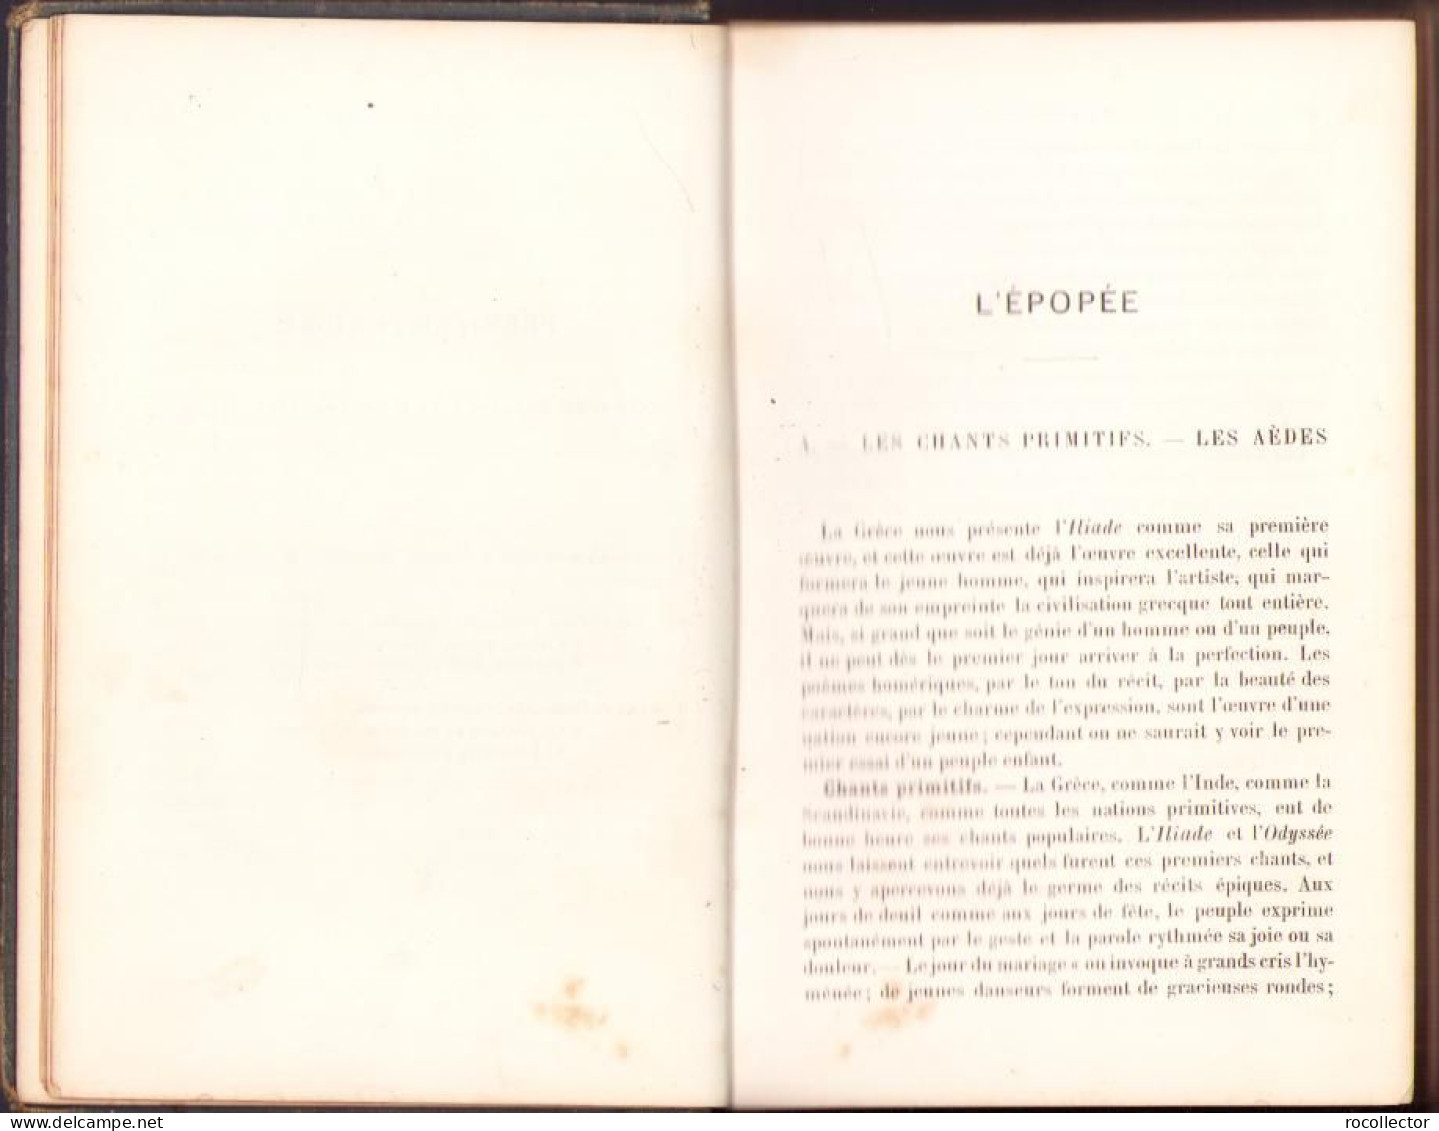 Historie sommaire de la litterature greque par Georges Edet, 1887 C2163